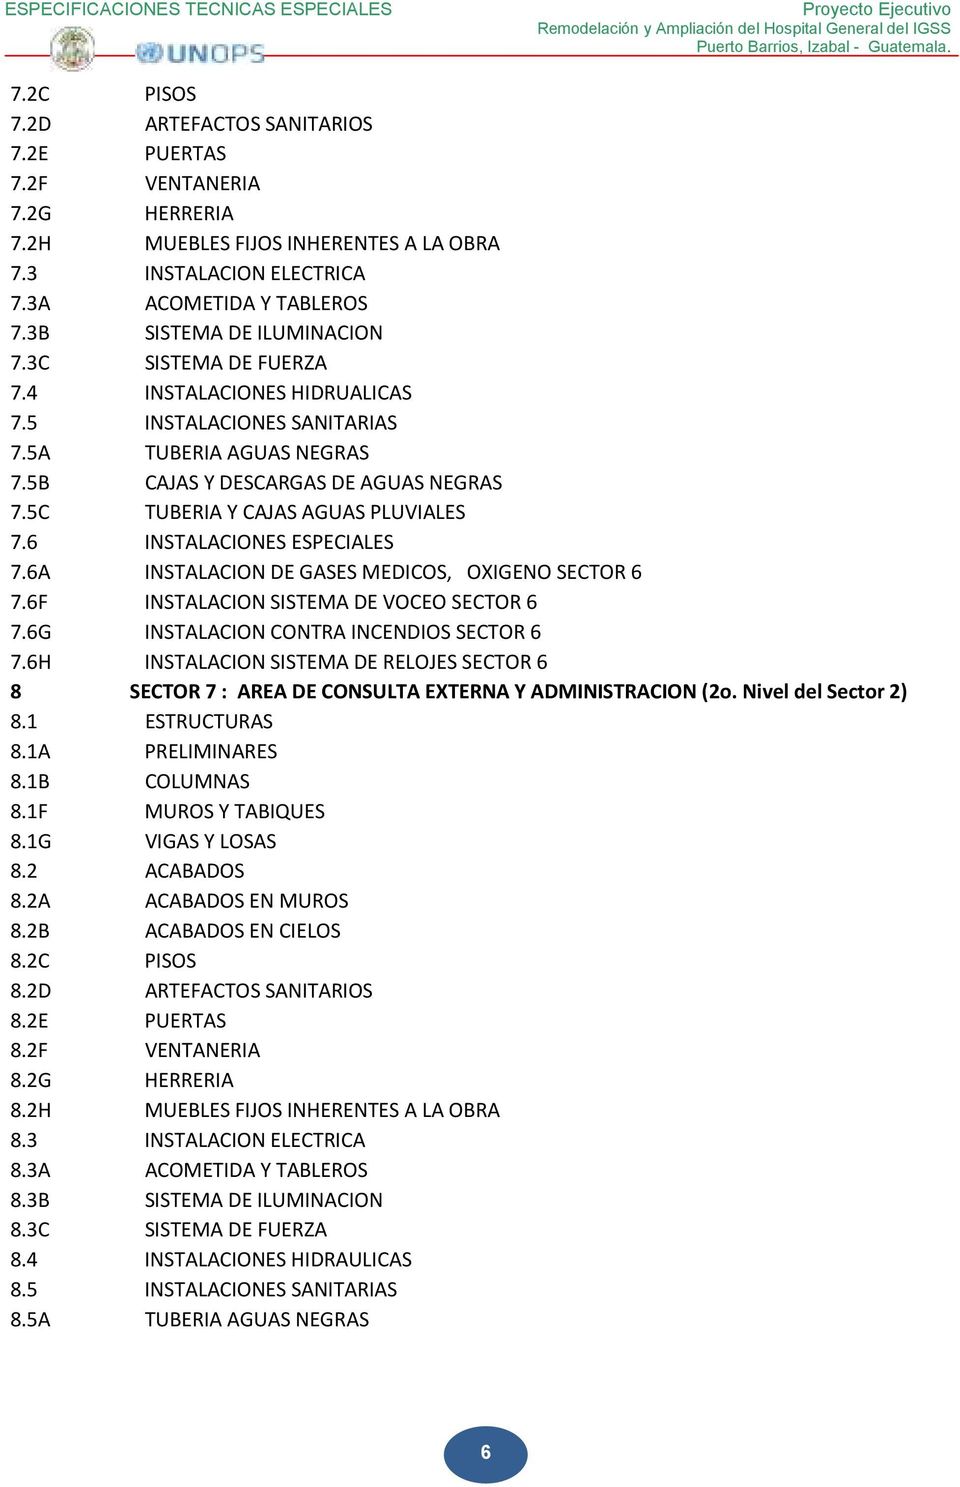 5C TUBERIA Y CAJAS AGUAS PLUVIALES 7.6 INSTALACIONES ESPECIALES 7.6A INSTALACION DE GASES MEDICOS, OXIGENO SECTOR 6 7.6F INSTALACION SISTEMA DE VOCEO SECTOR 6 7.